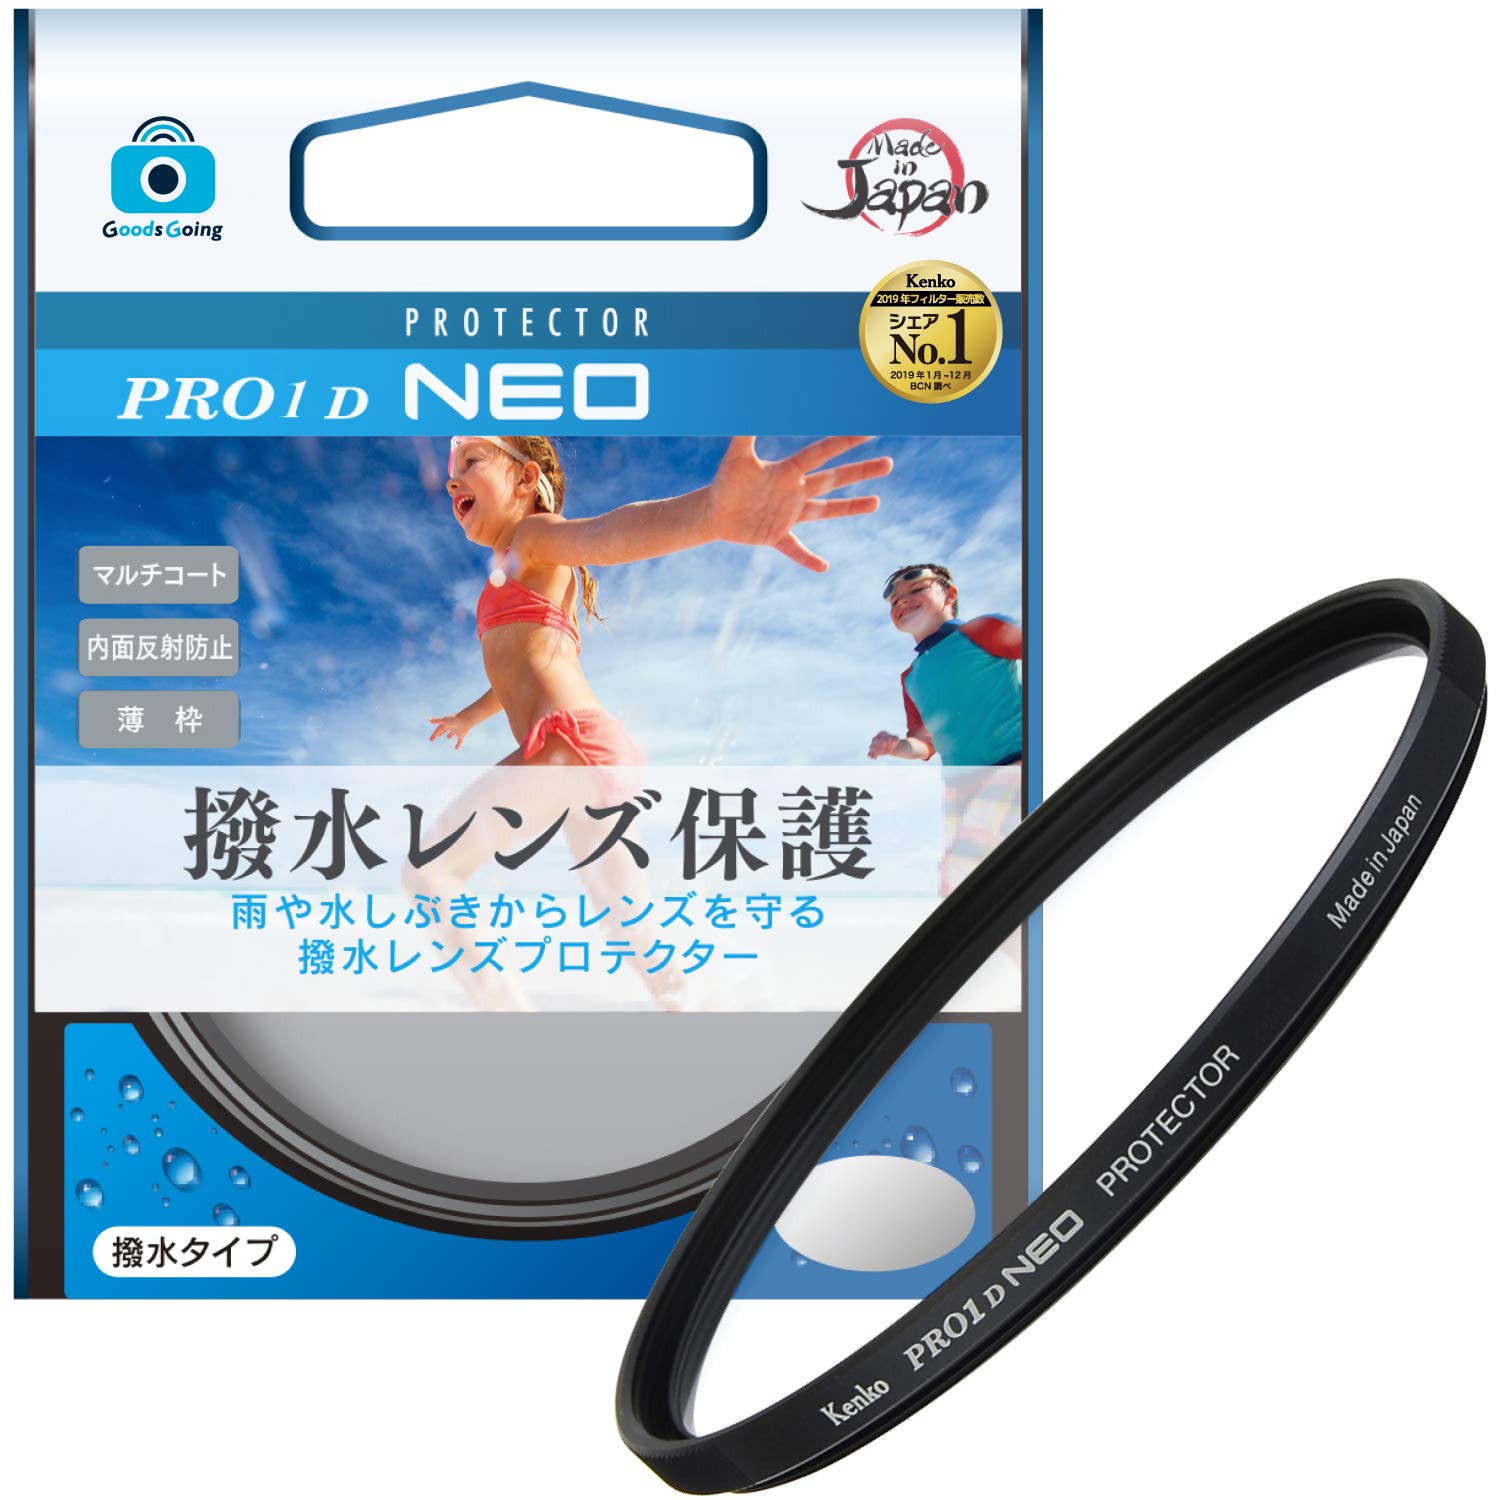 ケンコー(Kenko) グッズゴーイング(Goods Going) 49mm 撥水レンズフィルター PRO1D プロテクター NEO レンズ保護用 撥水・防汚コーティン